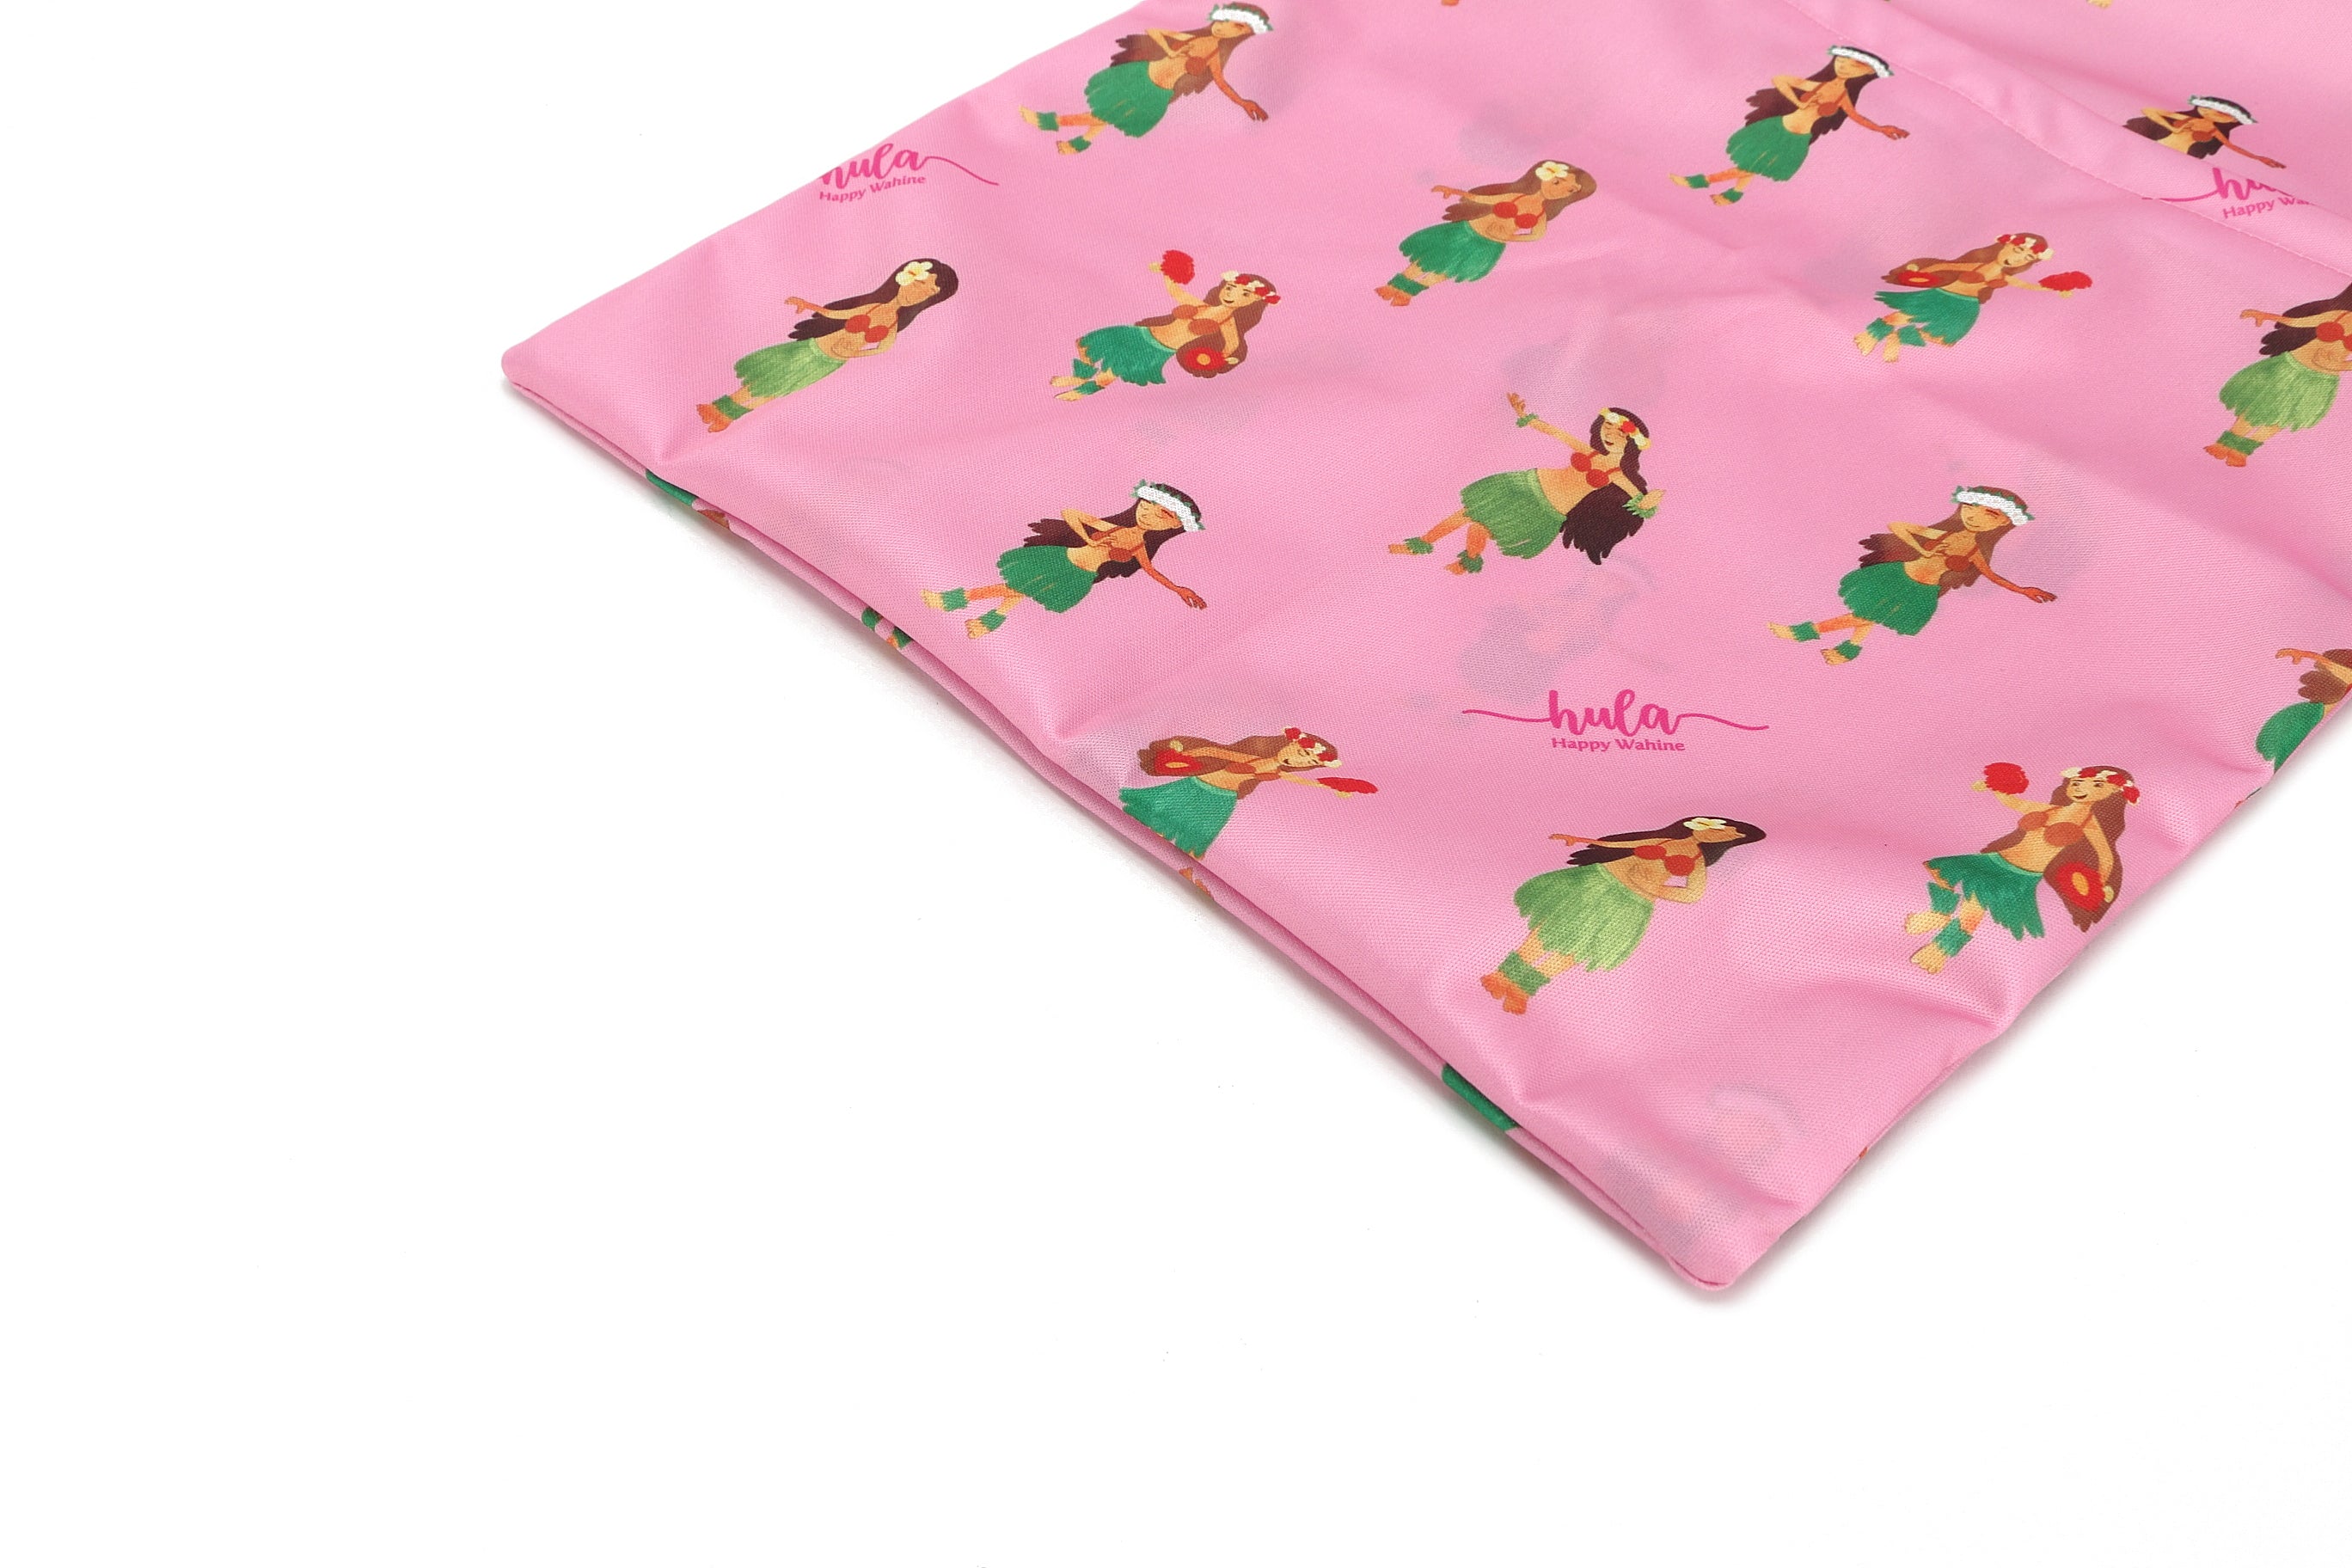 Wet Bag Hula Girl Pink